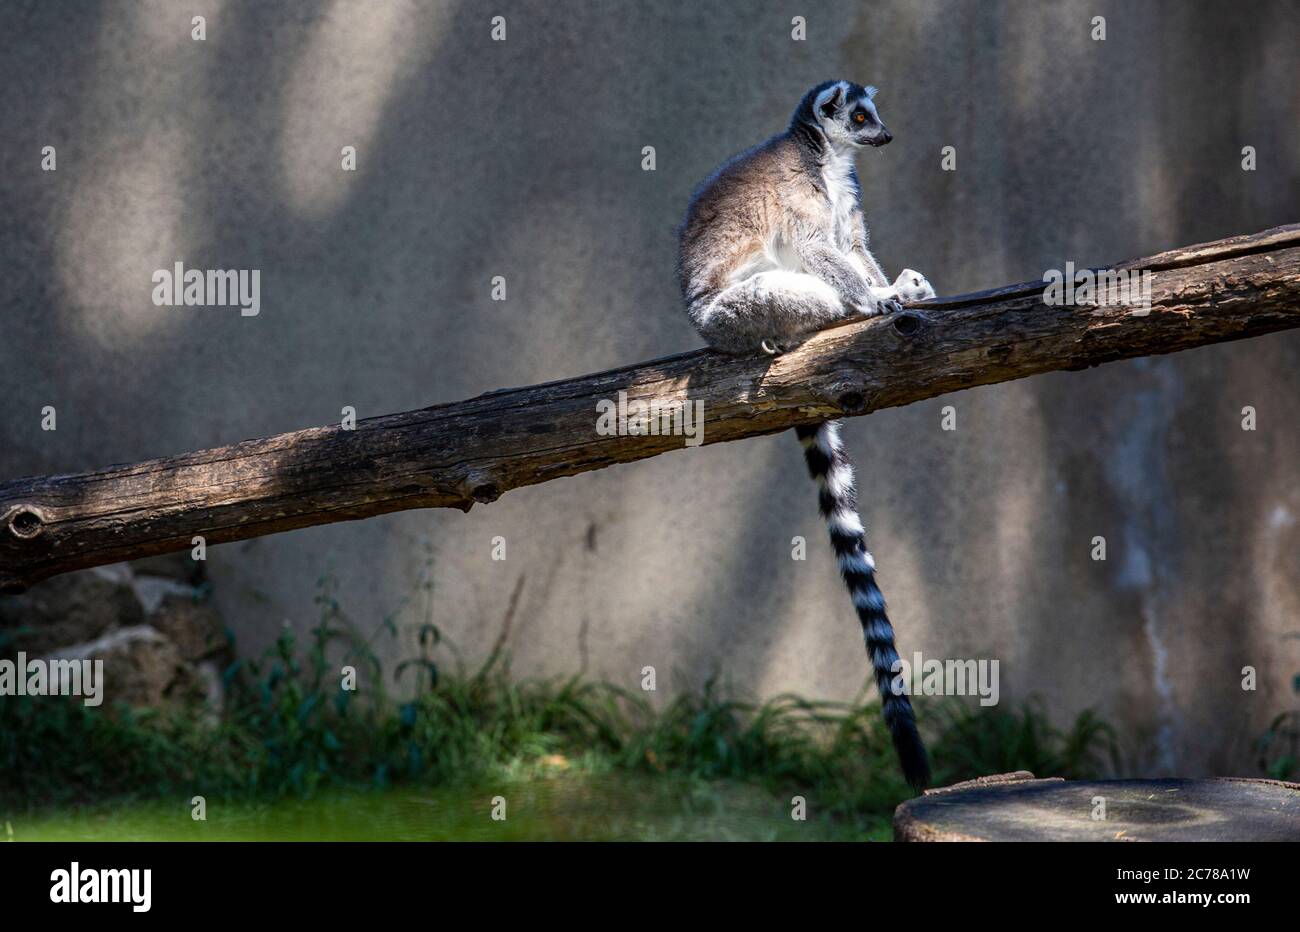 Lemur auf einem umgestürzten Stamm in einem Gehege Stockfoto